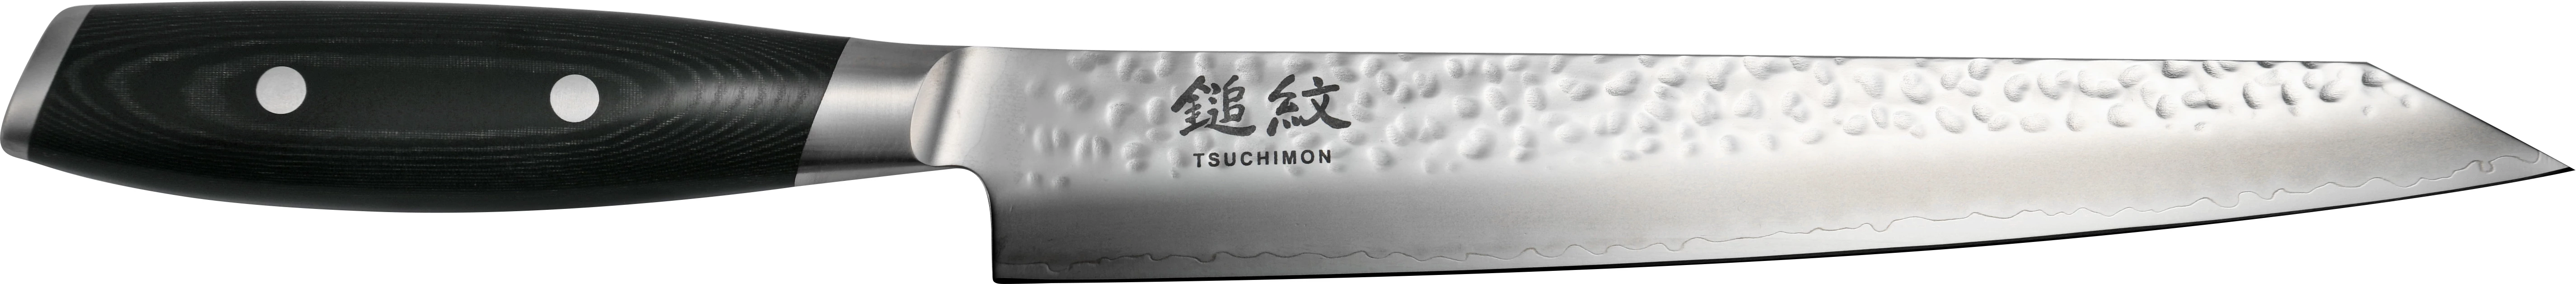 Yaxell Tsuchimon filetkniv, 23 cm